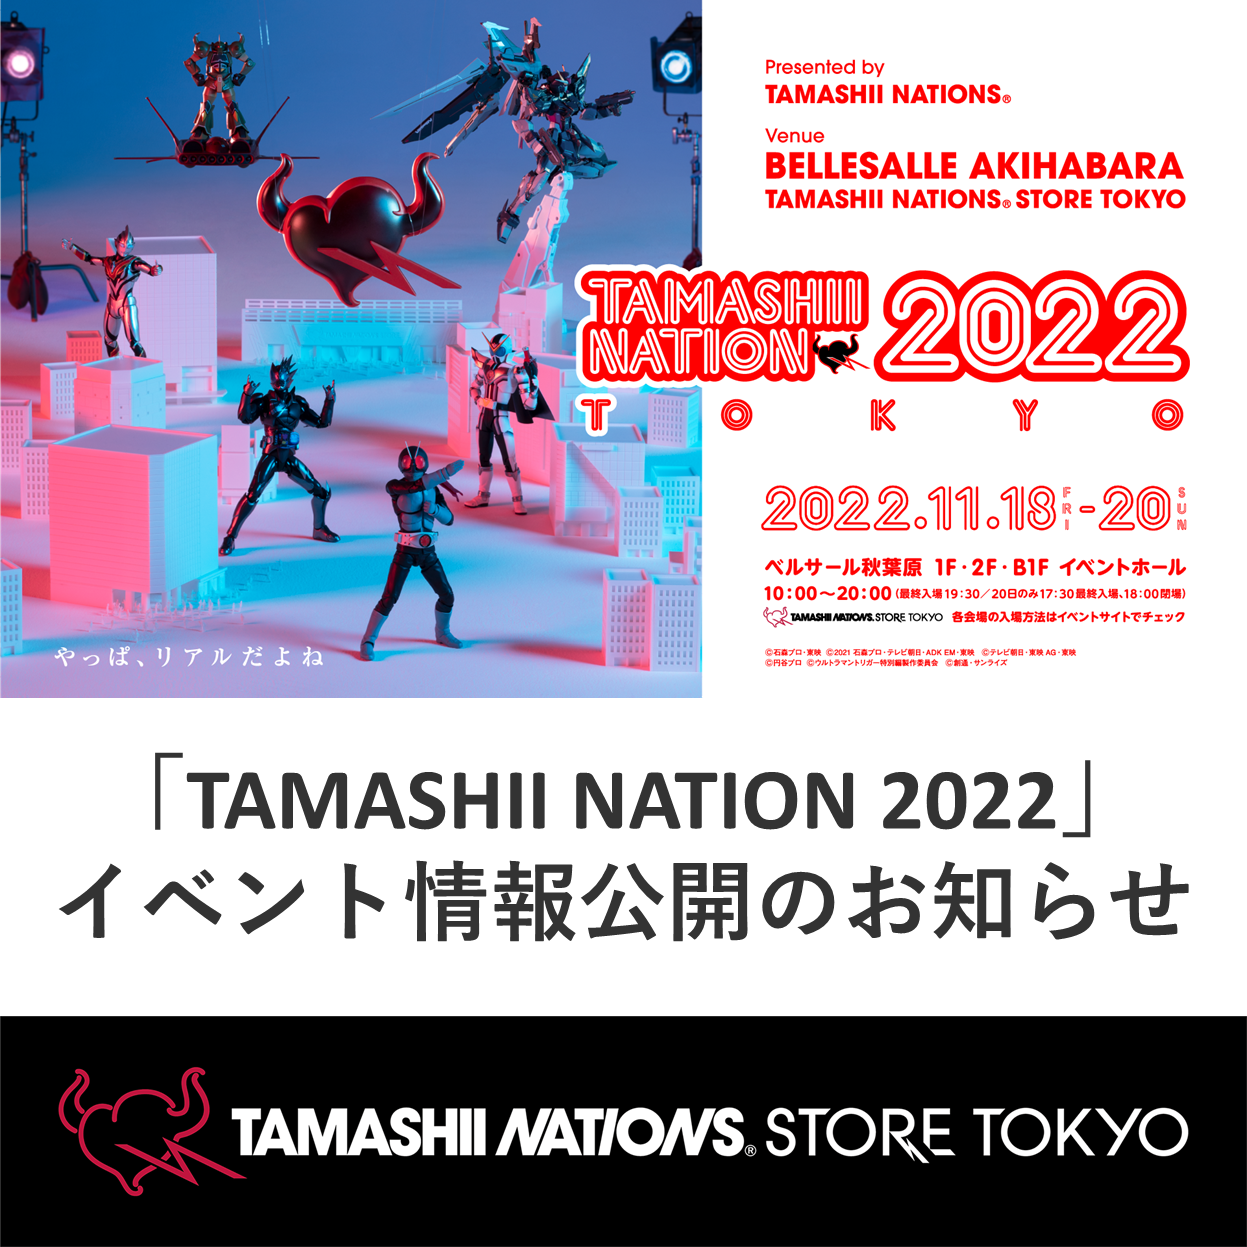 イベント 【魂ストア】「TAMASHII NATION 2022」イベント情報公開のお知らせ！